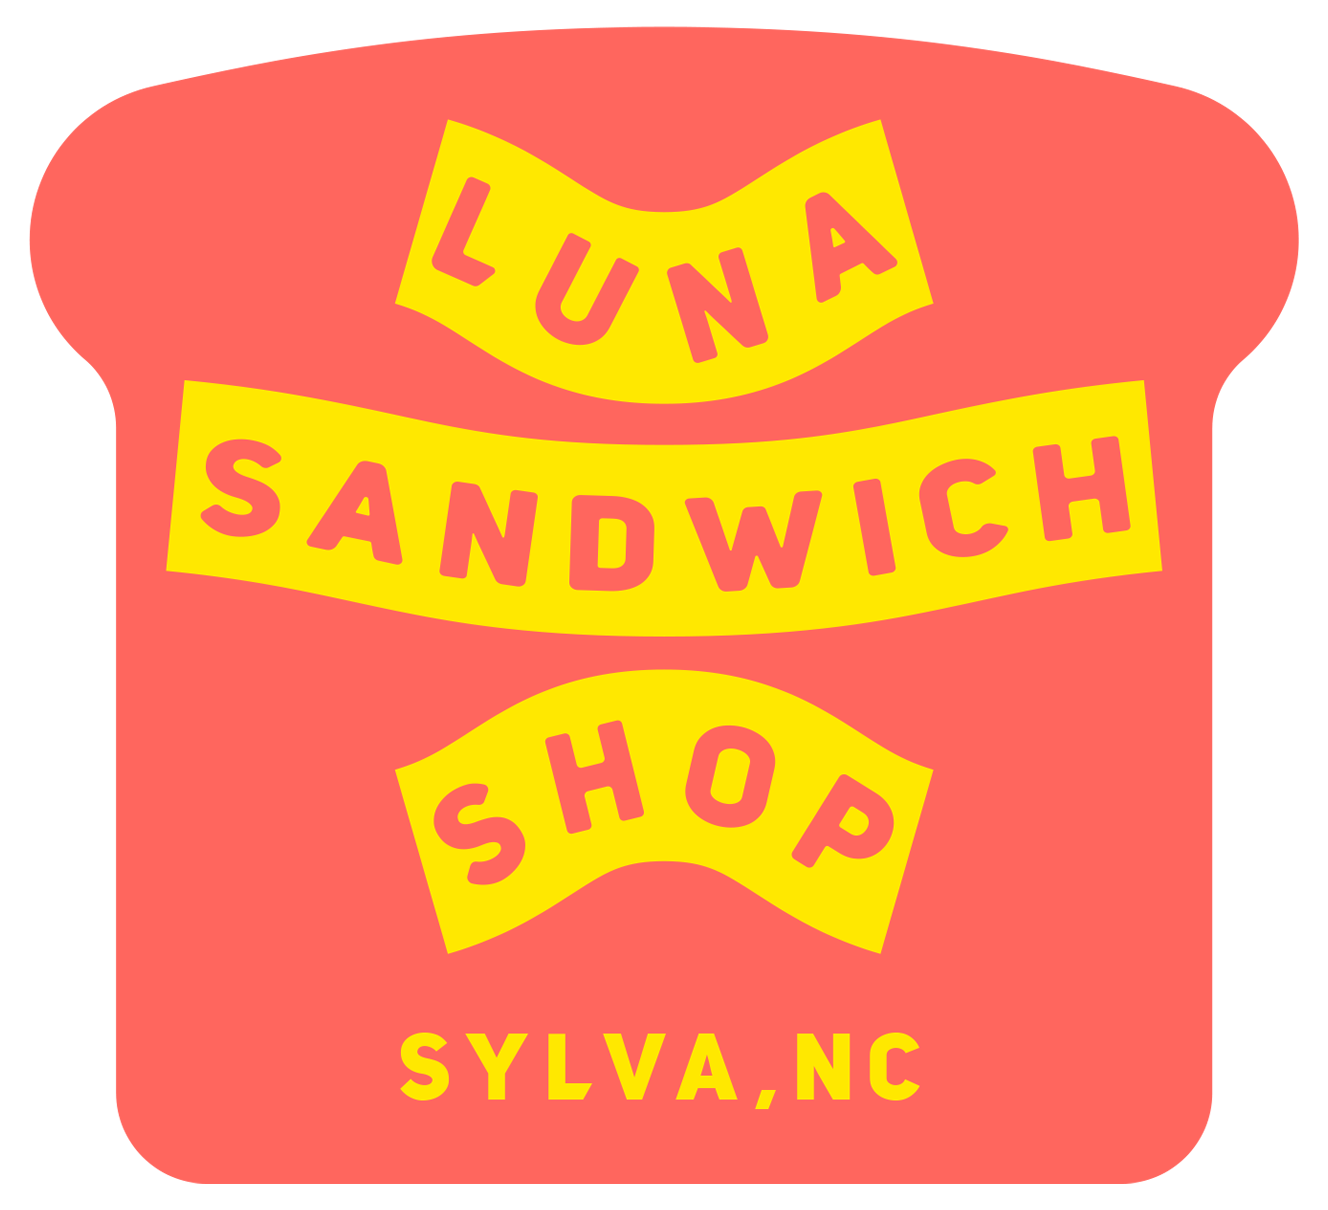 Luna sandwich shop Home